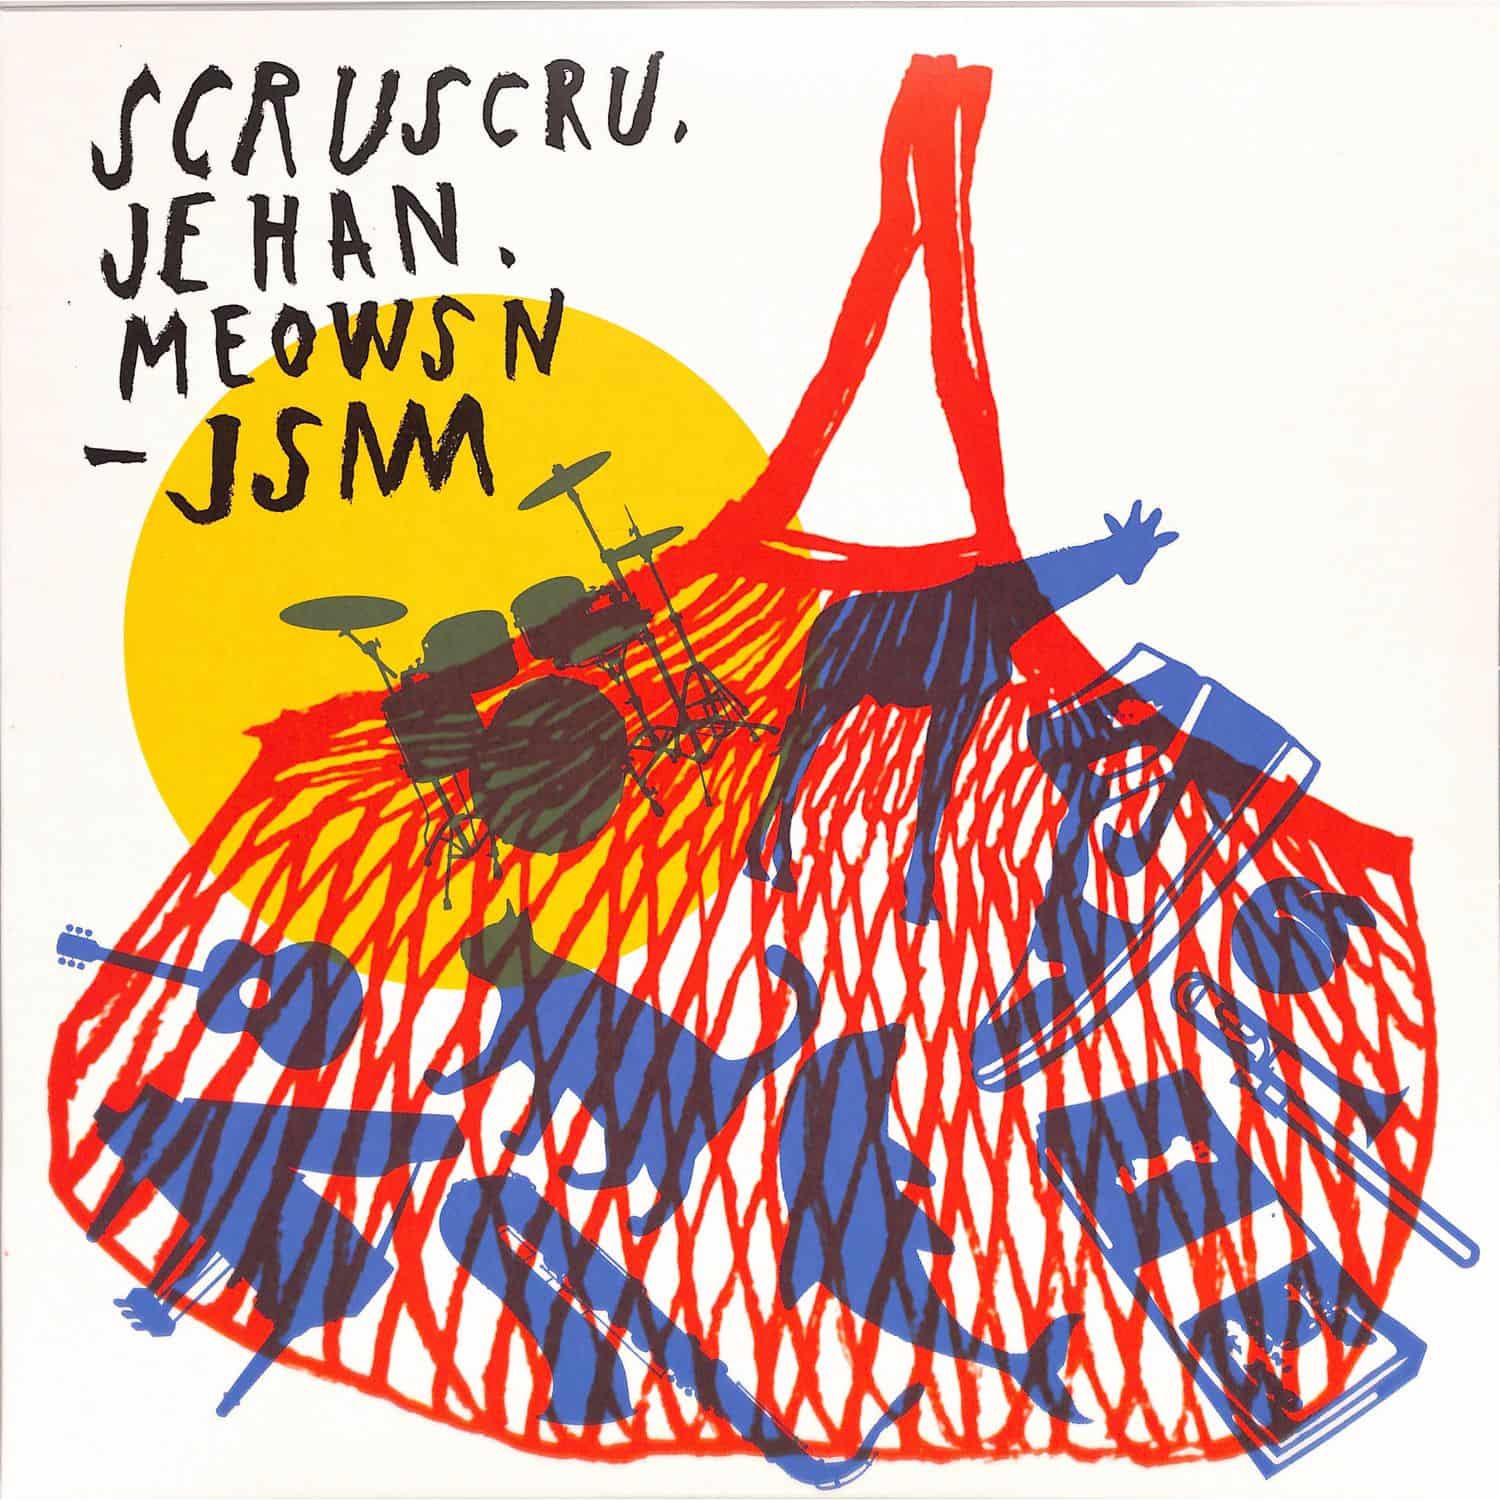 Scruscru / Jehan / Meowsn - JSM 